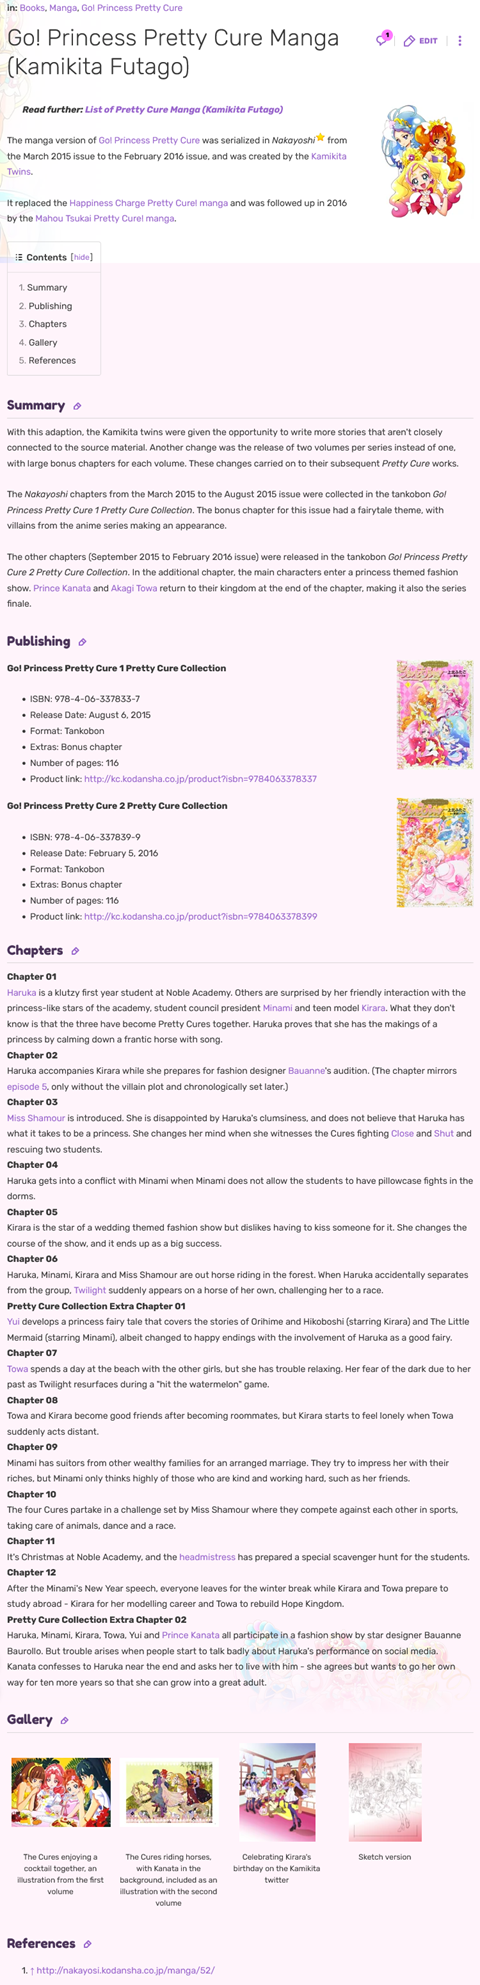 Go! Princess manga on prettycure.fandom.com